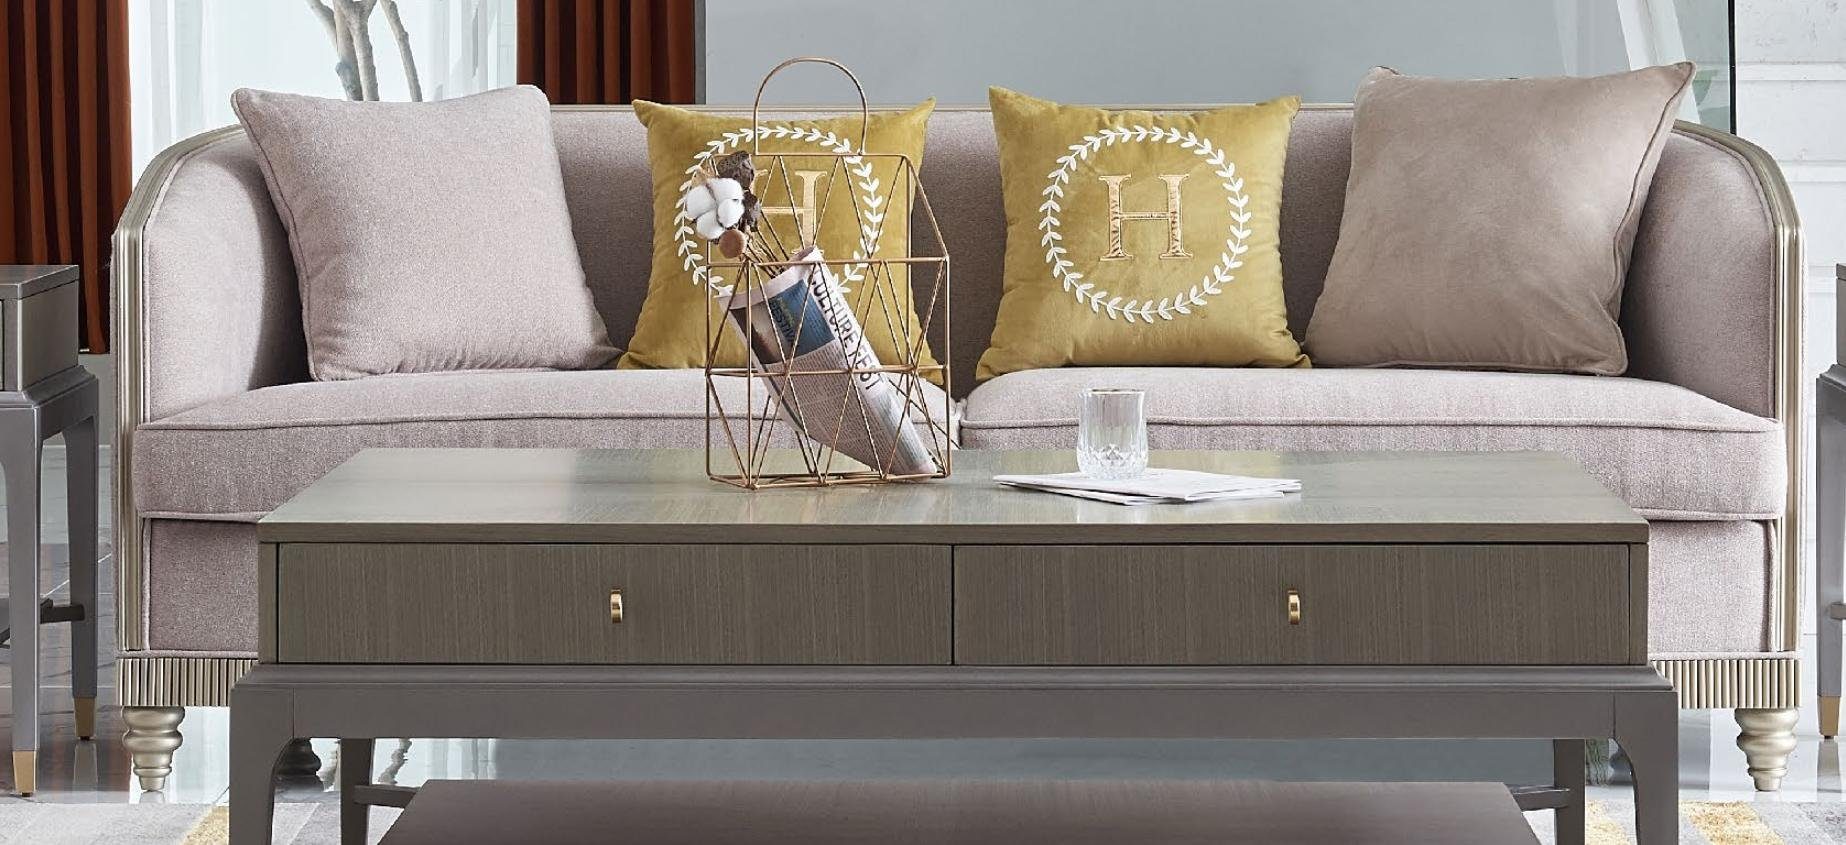 JVmoebel Sofa 3-er Dreisitzer Textil Neu, moderne Couch in beige Made Europe Polstermöbel